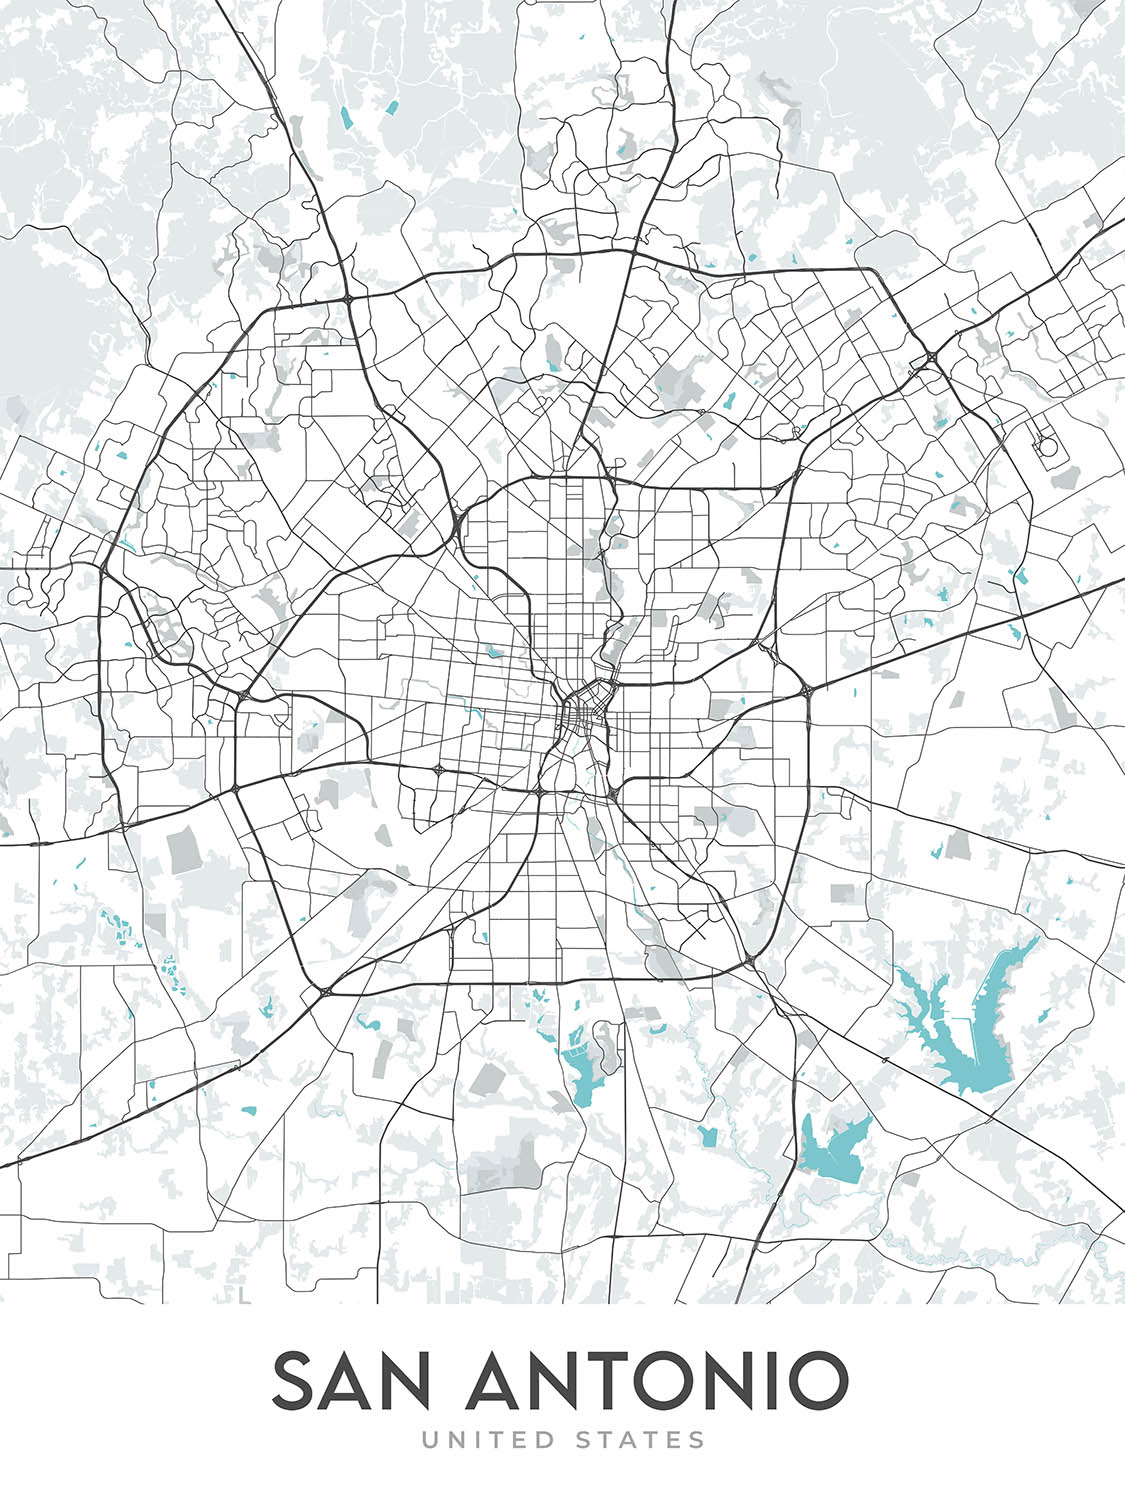 Mapa moderno de la ciudad de San Antonio, TX: Álamo, River Walk, AT&T Center, Centro, I-35